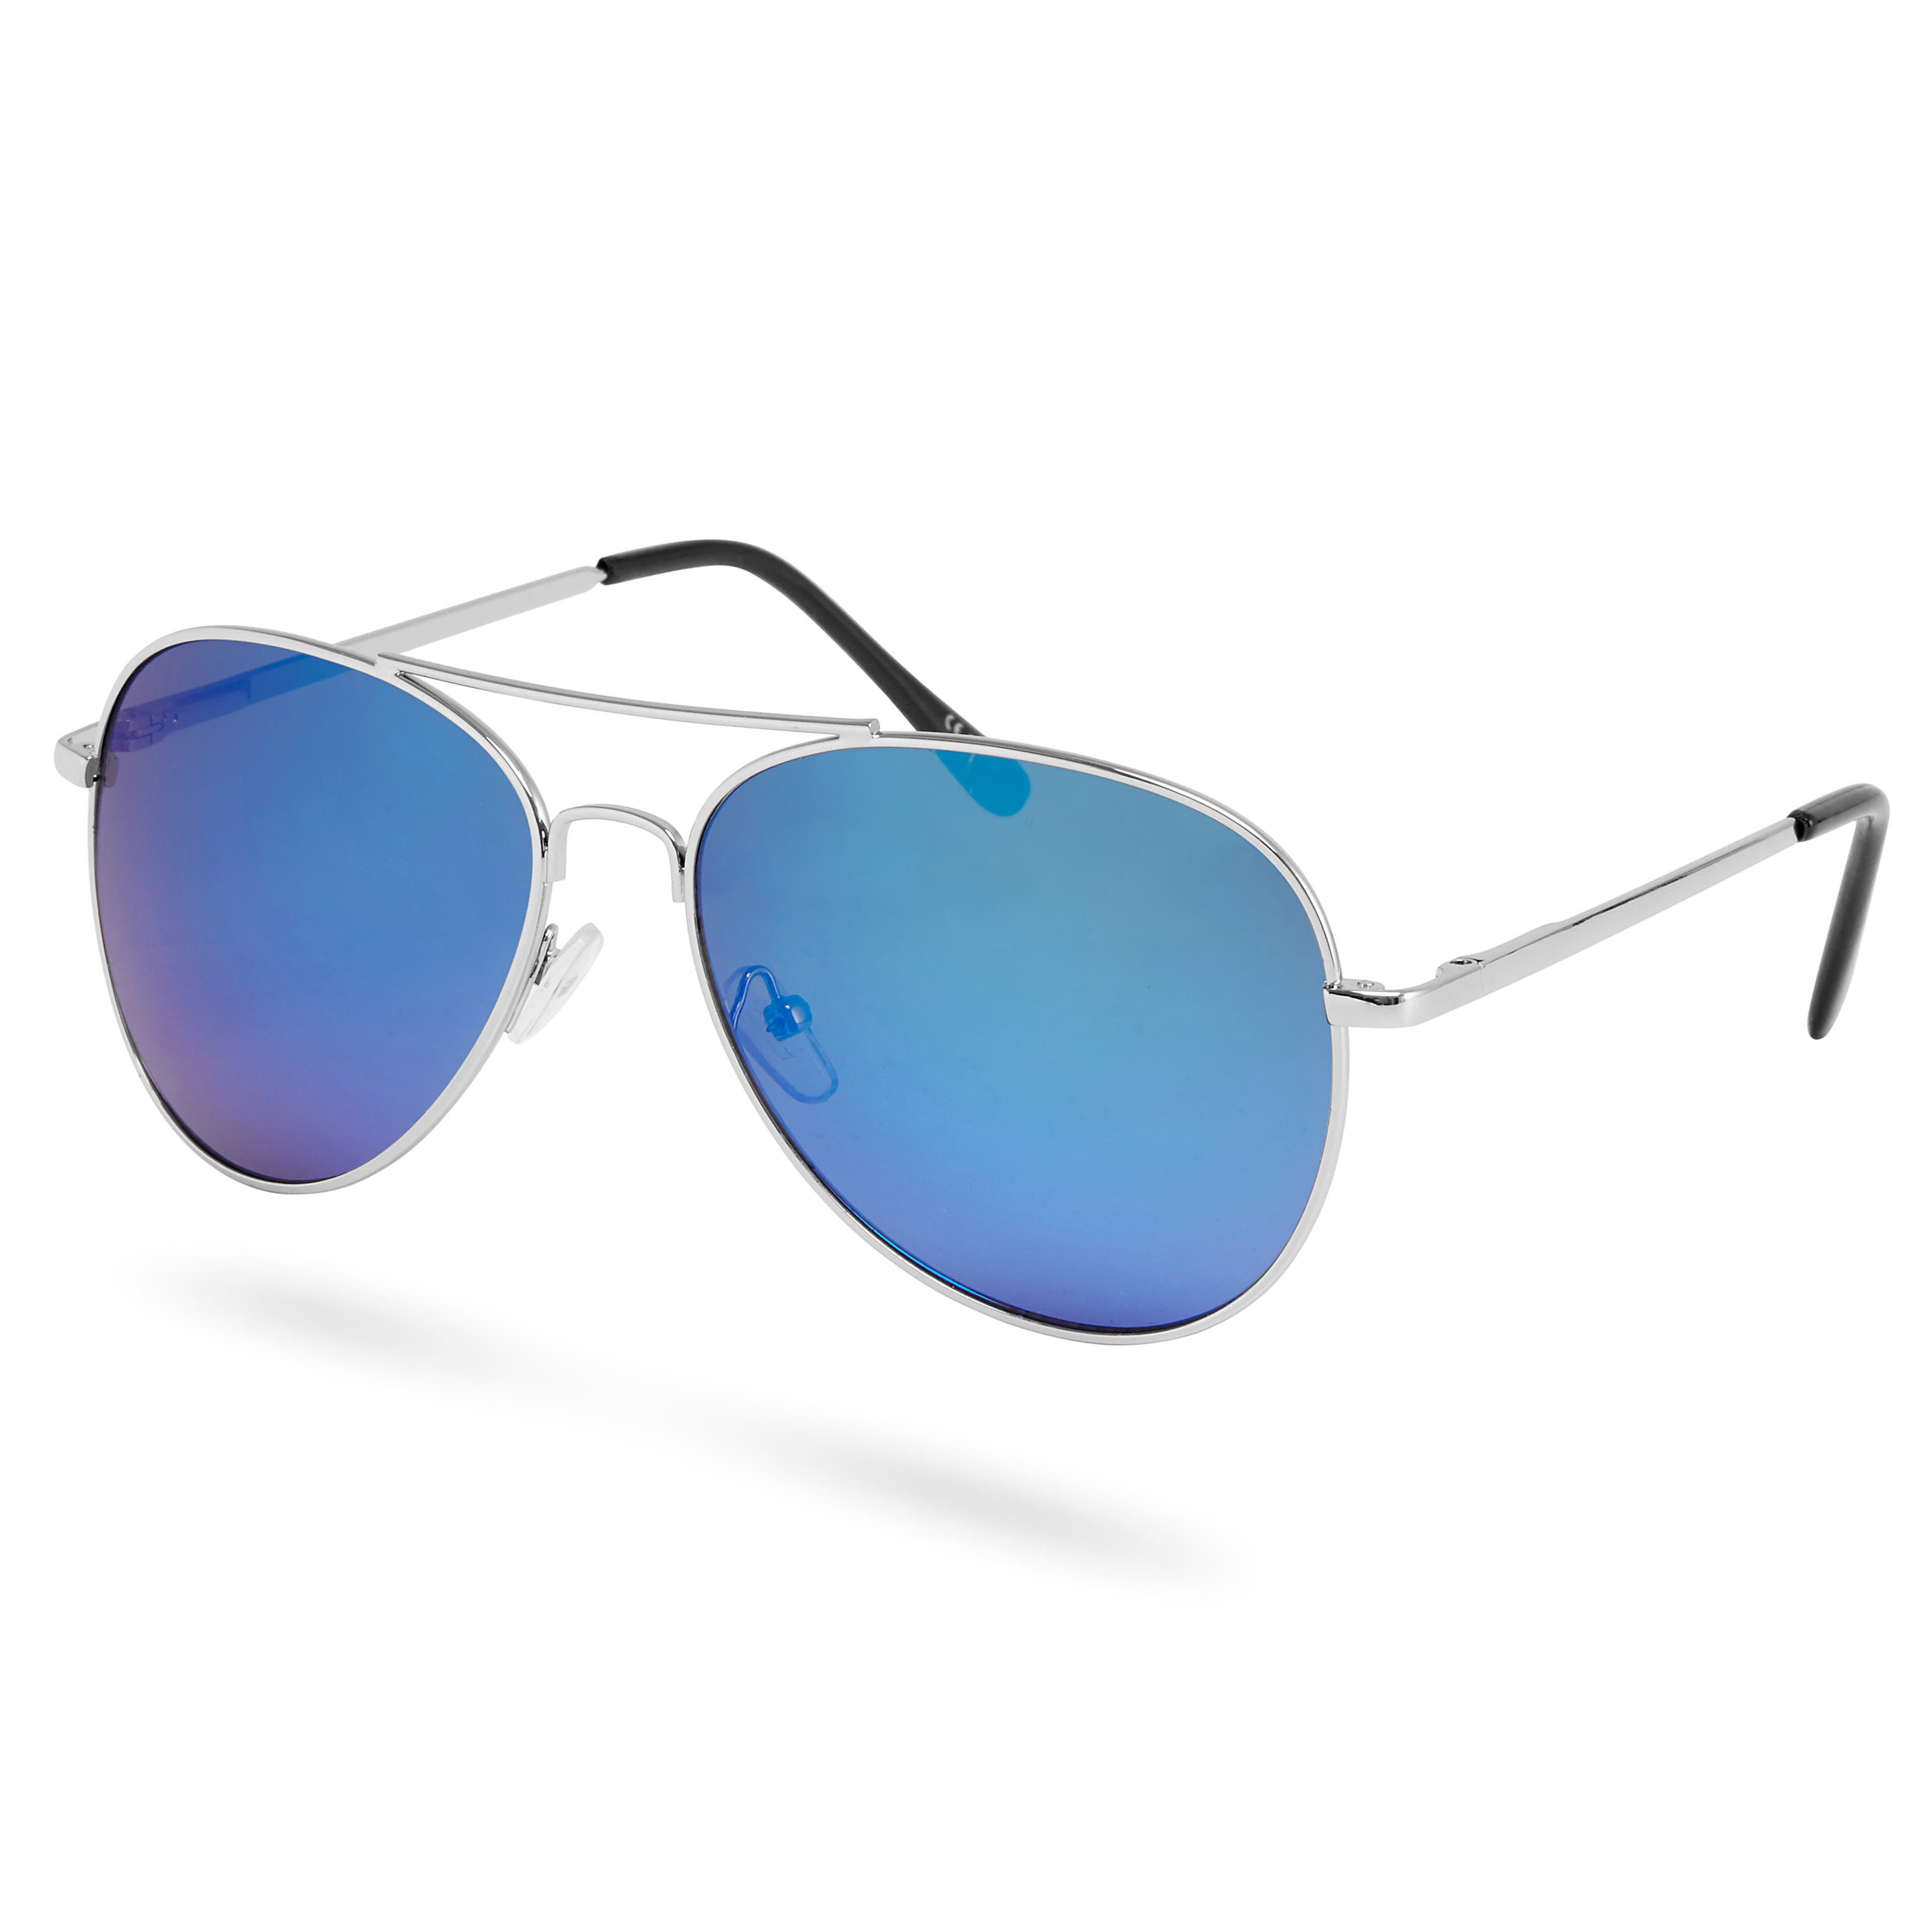 Ochelari de soare stil aviator de culoare argintie cu lentile oglindite albastre